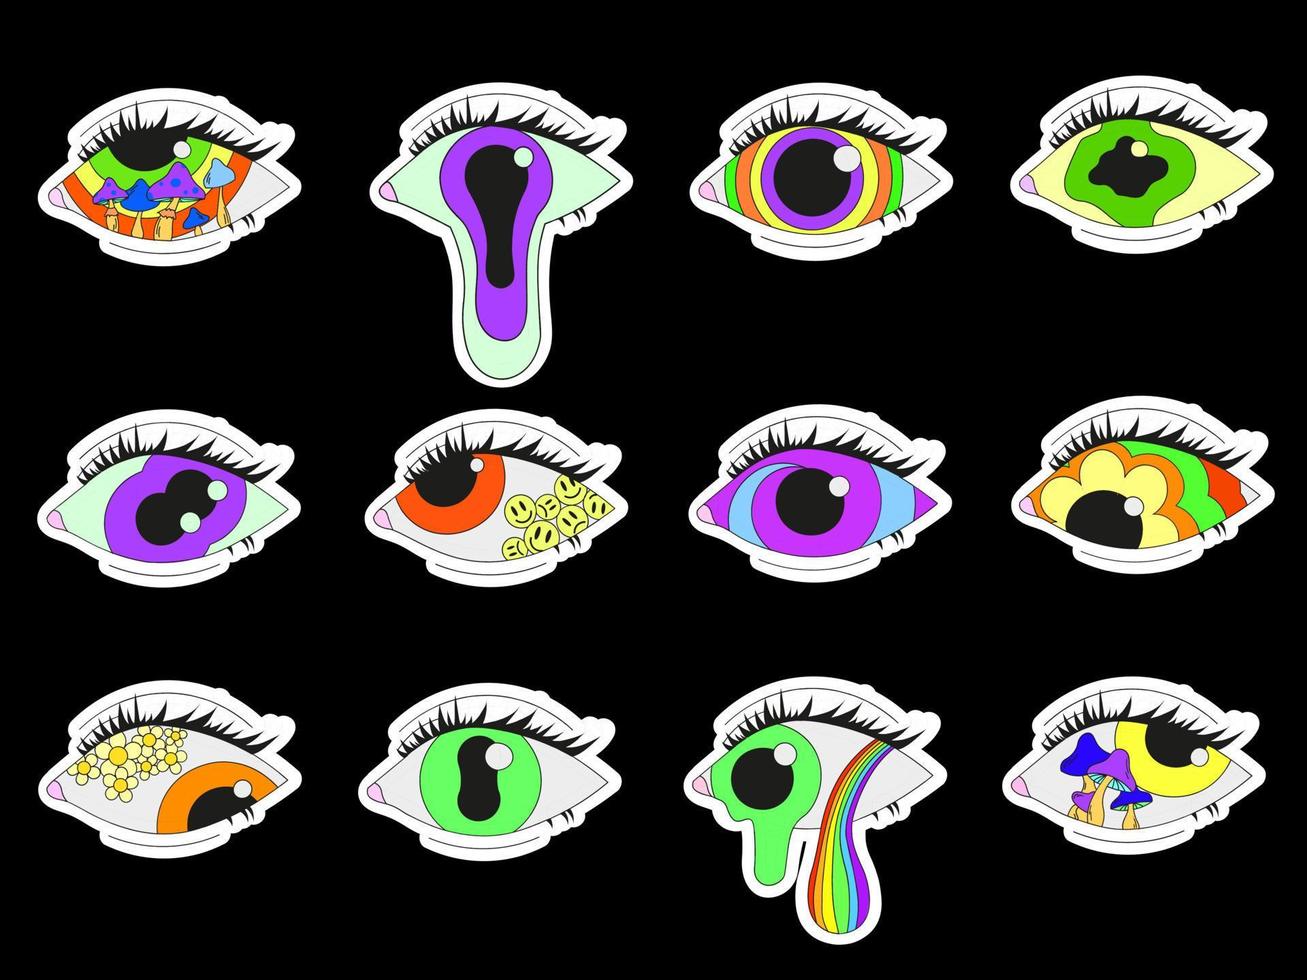 un set di 12 adesivi di diversi occhi psichedelici. psichedelici, surrealismo vettore